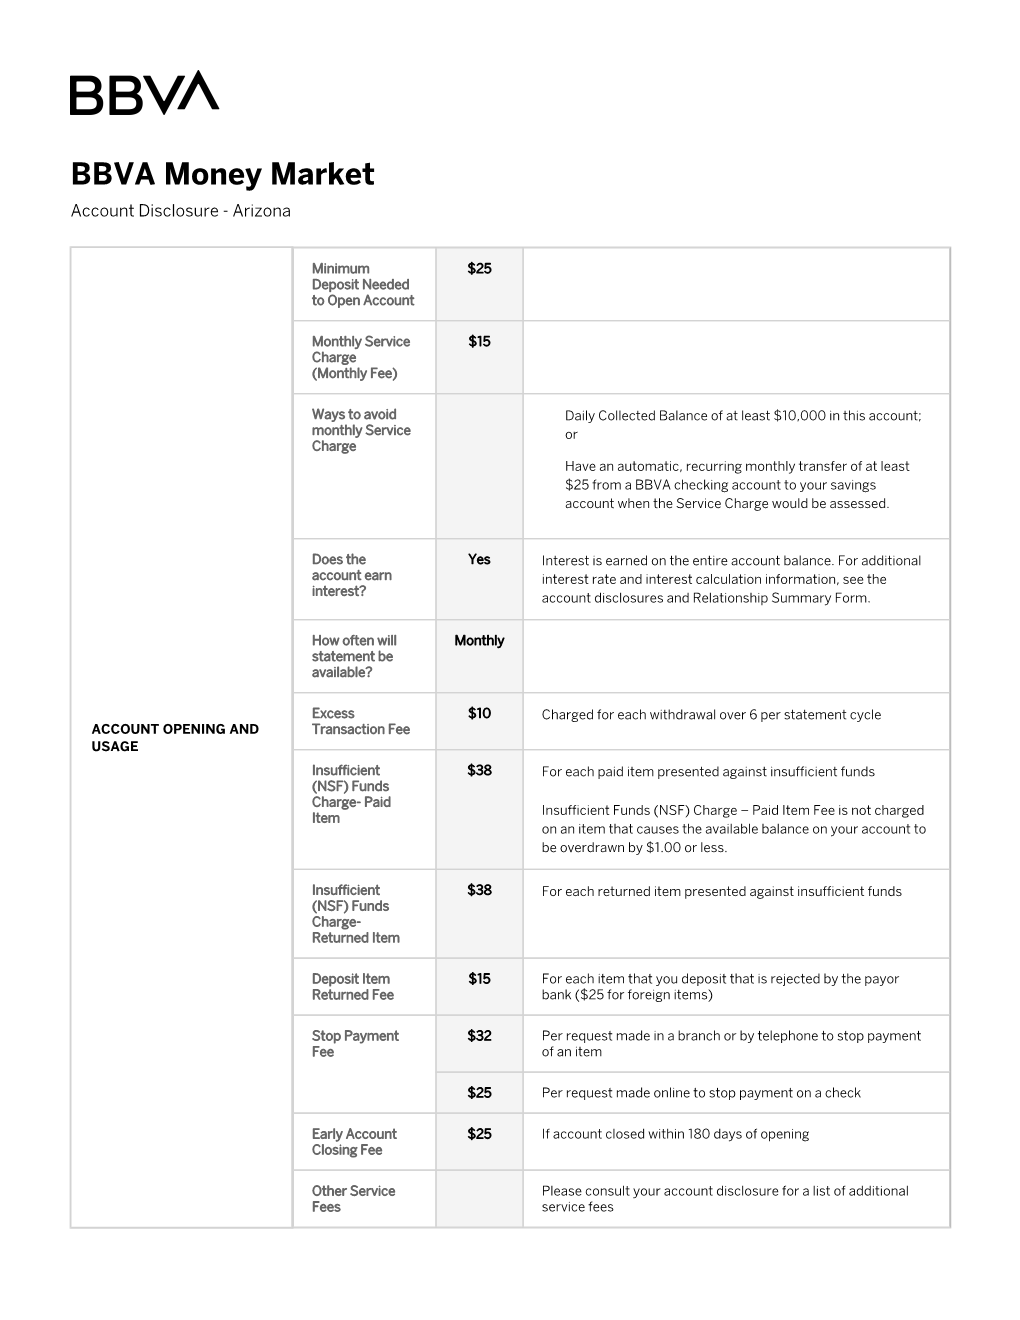 BBVA Money Market Account Disclosure | Arizona | BBVA